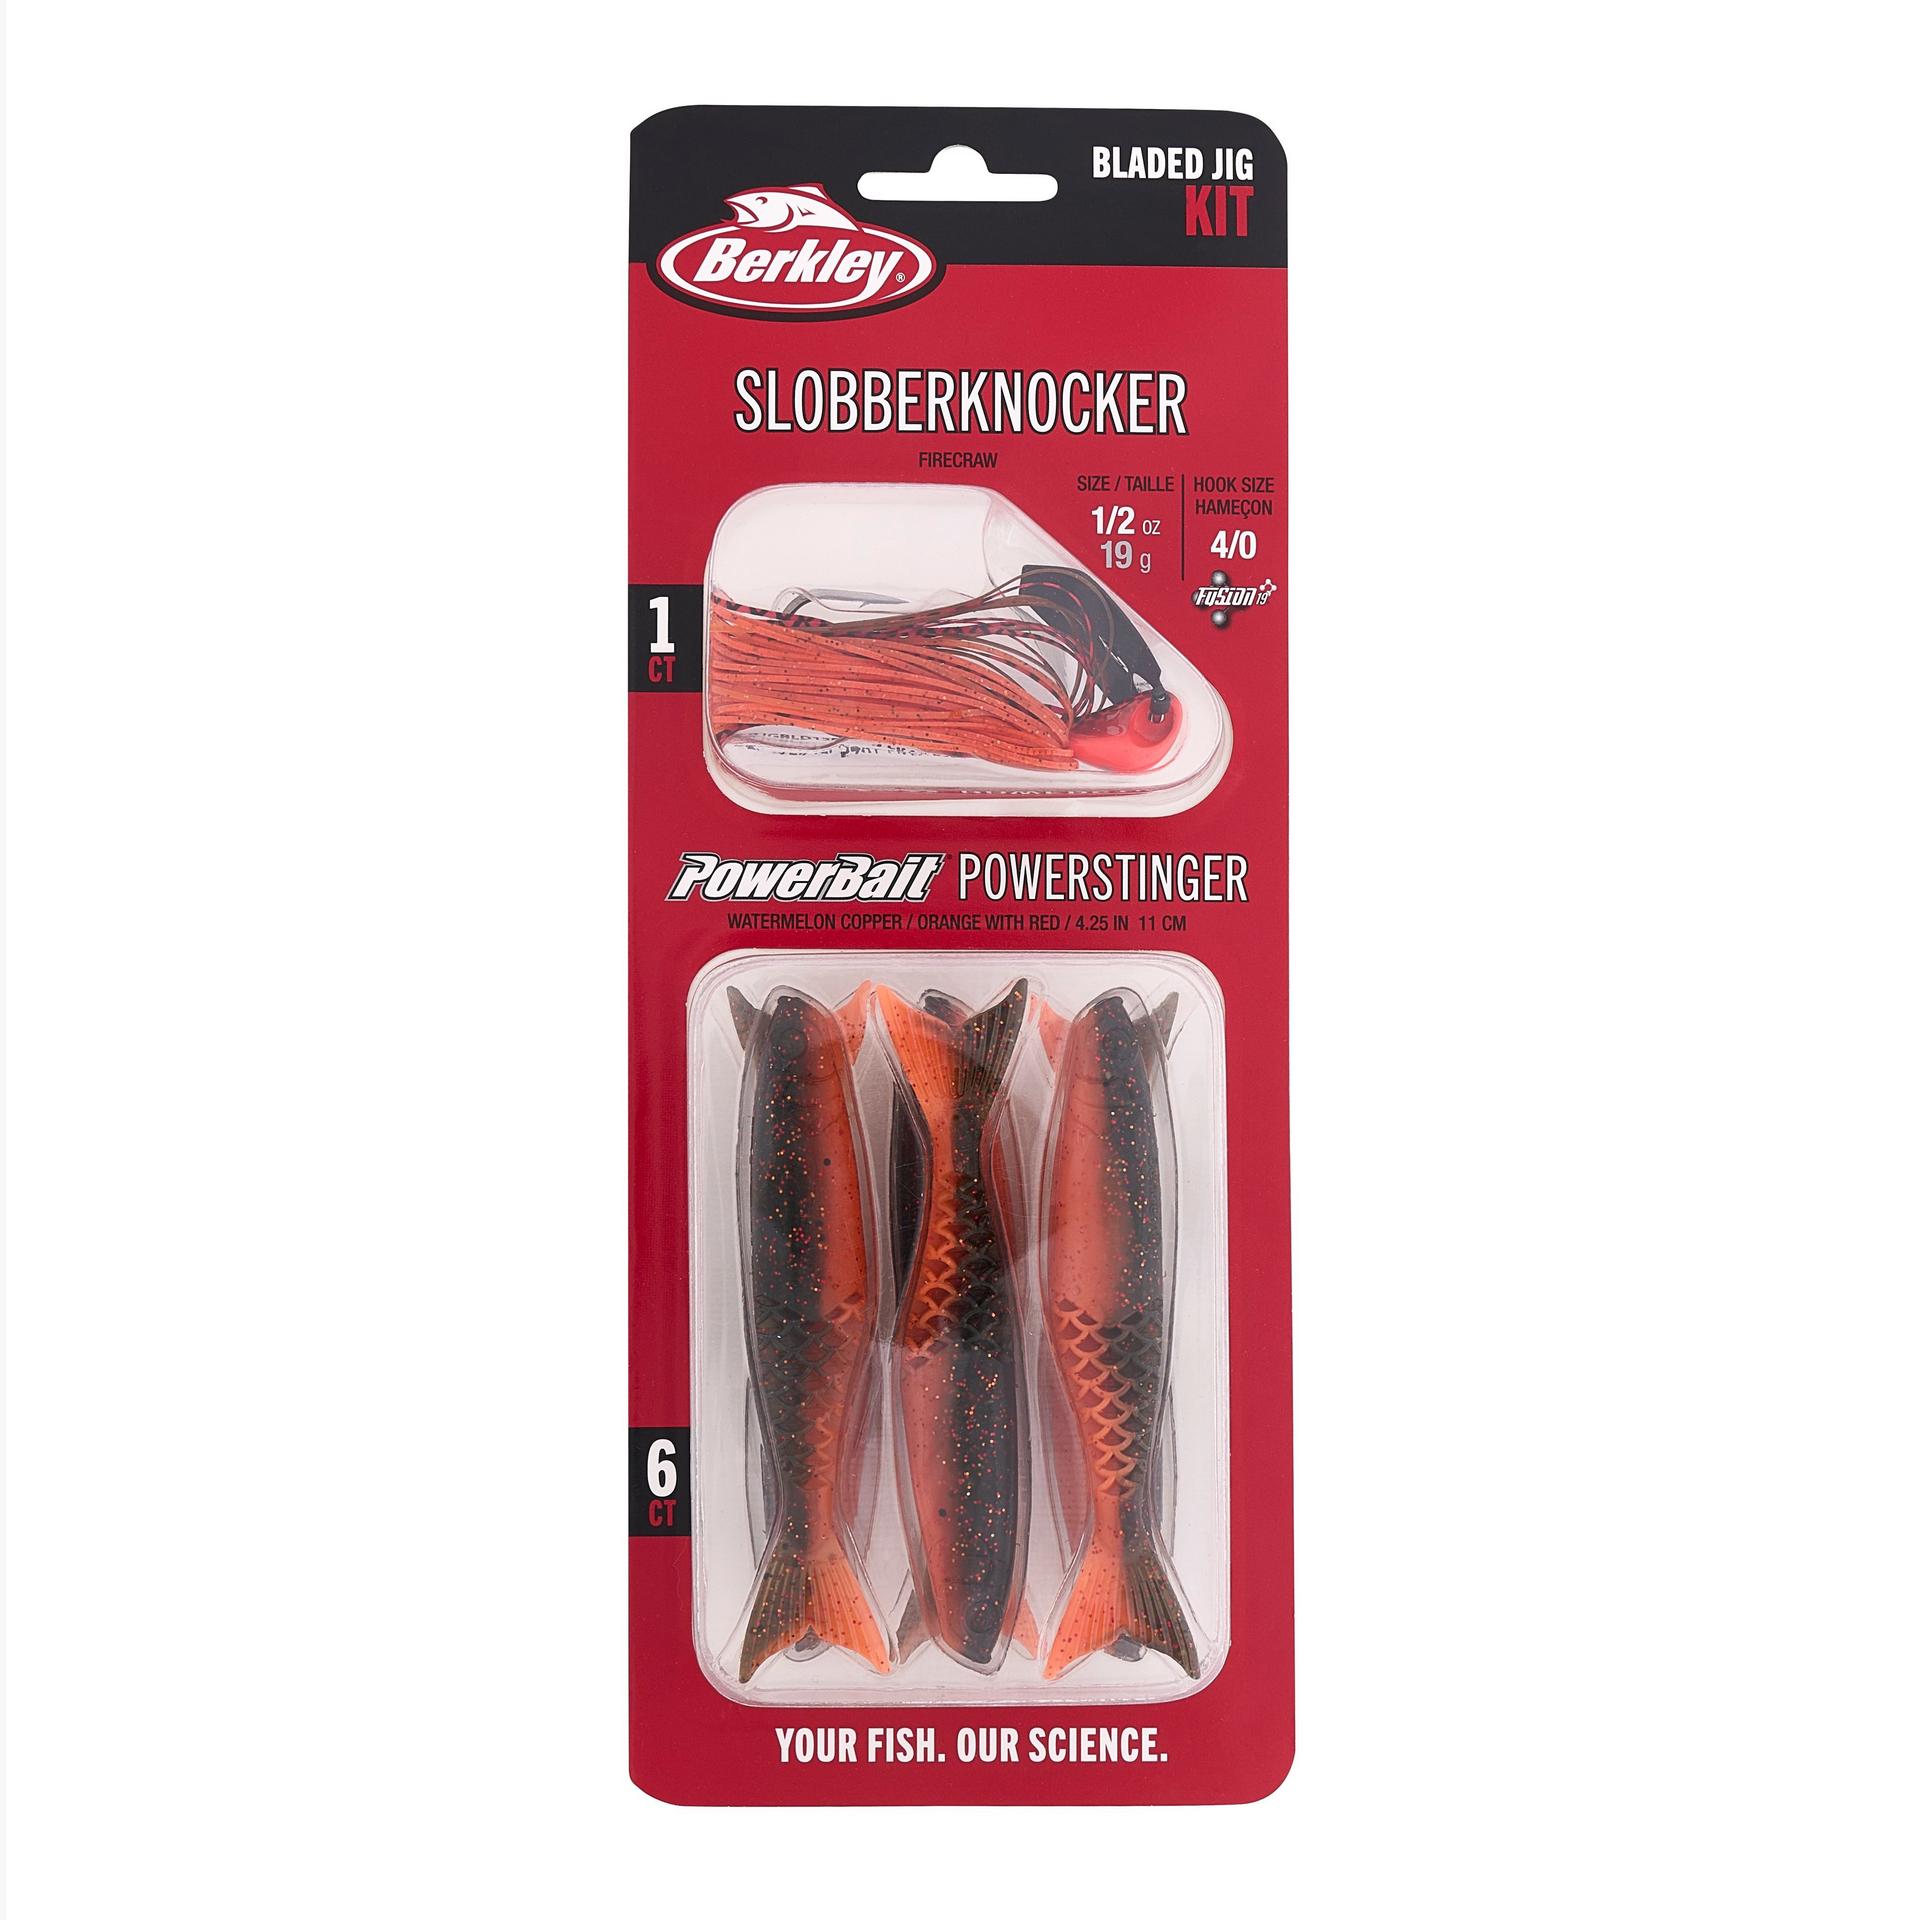 Slobberknocker and PowerStinger Kit